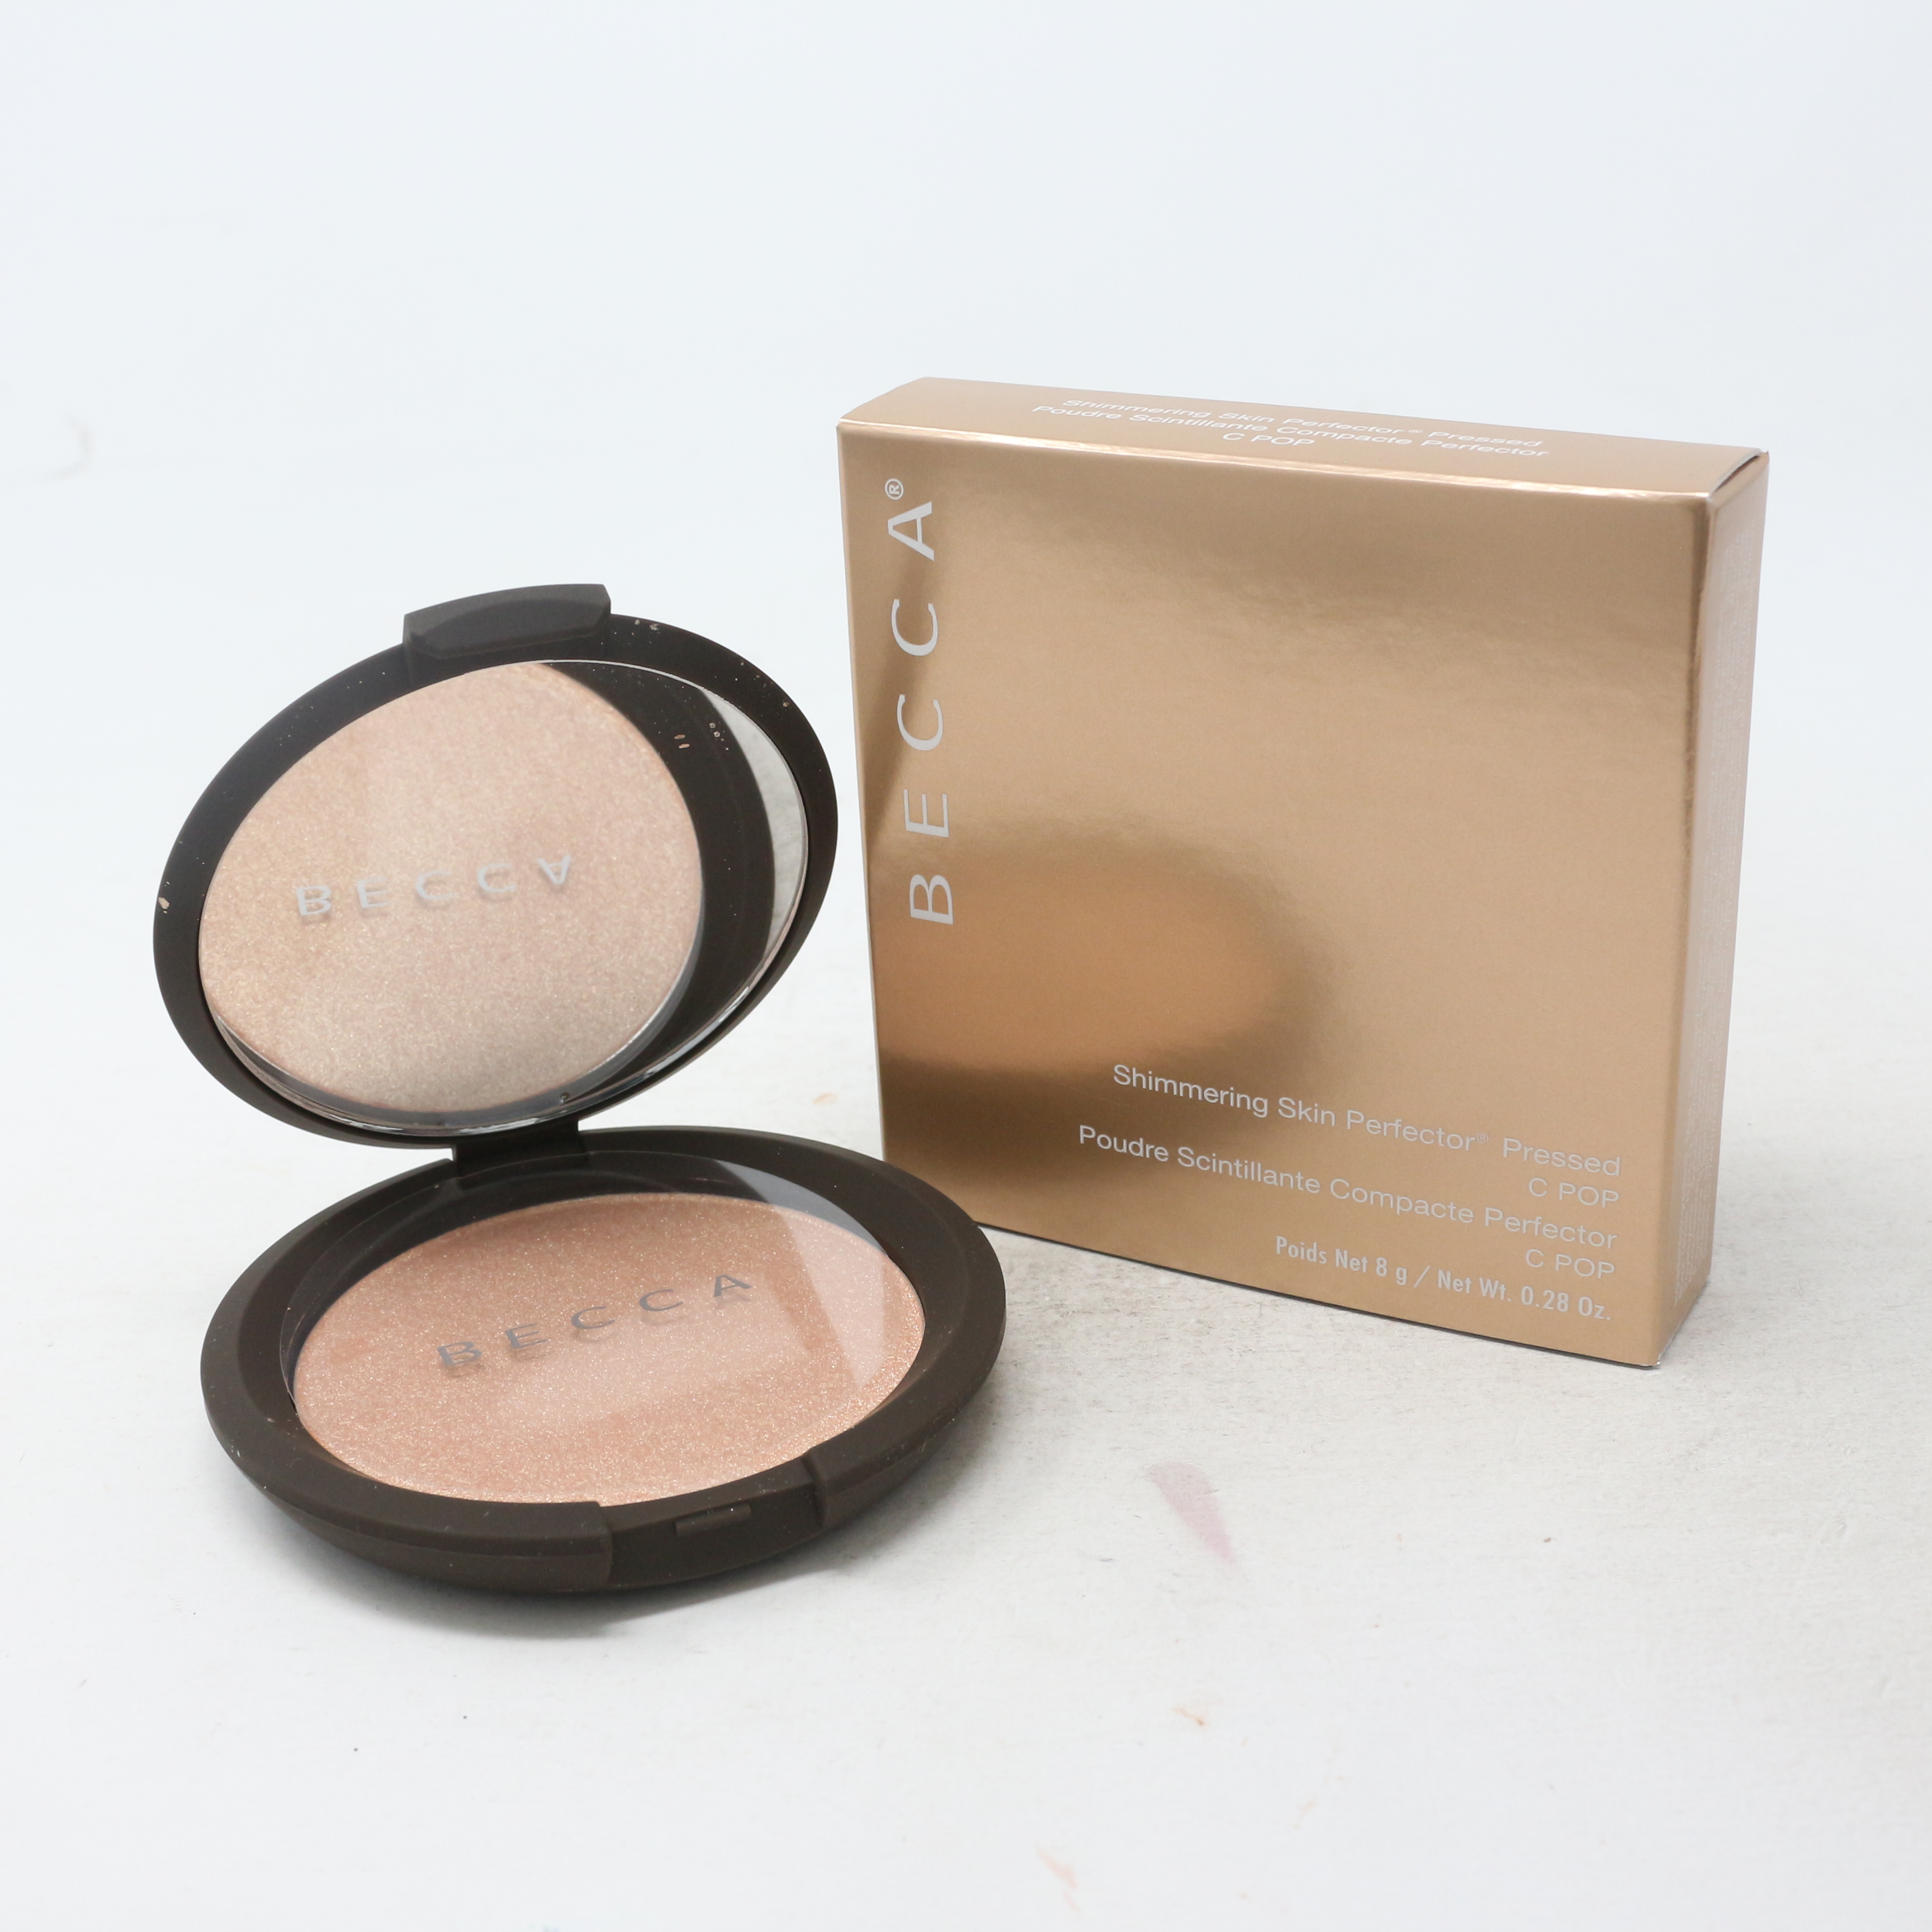 Forbindelse Sømil produktion Becca Shimmering Skin Perfector Pressed Highlighter 0.28oz/8g New With Box  | eBay